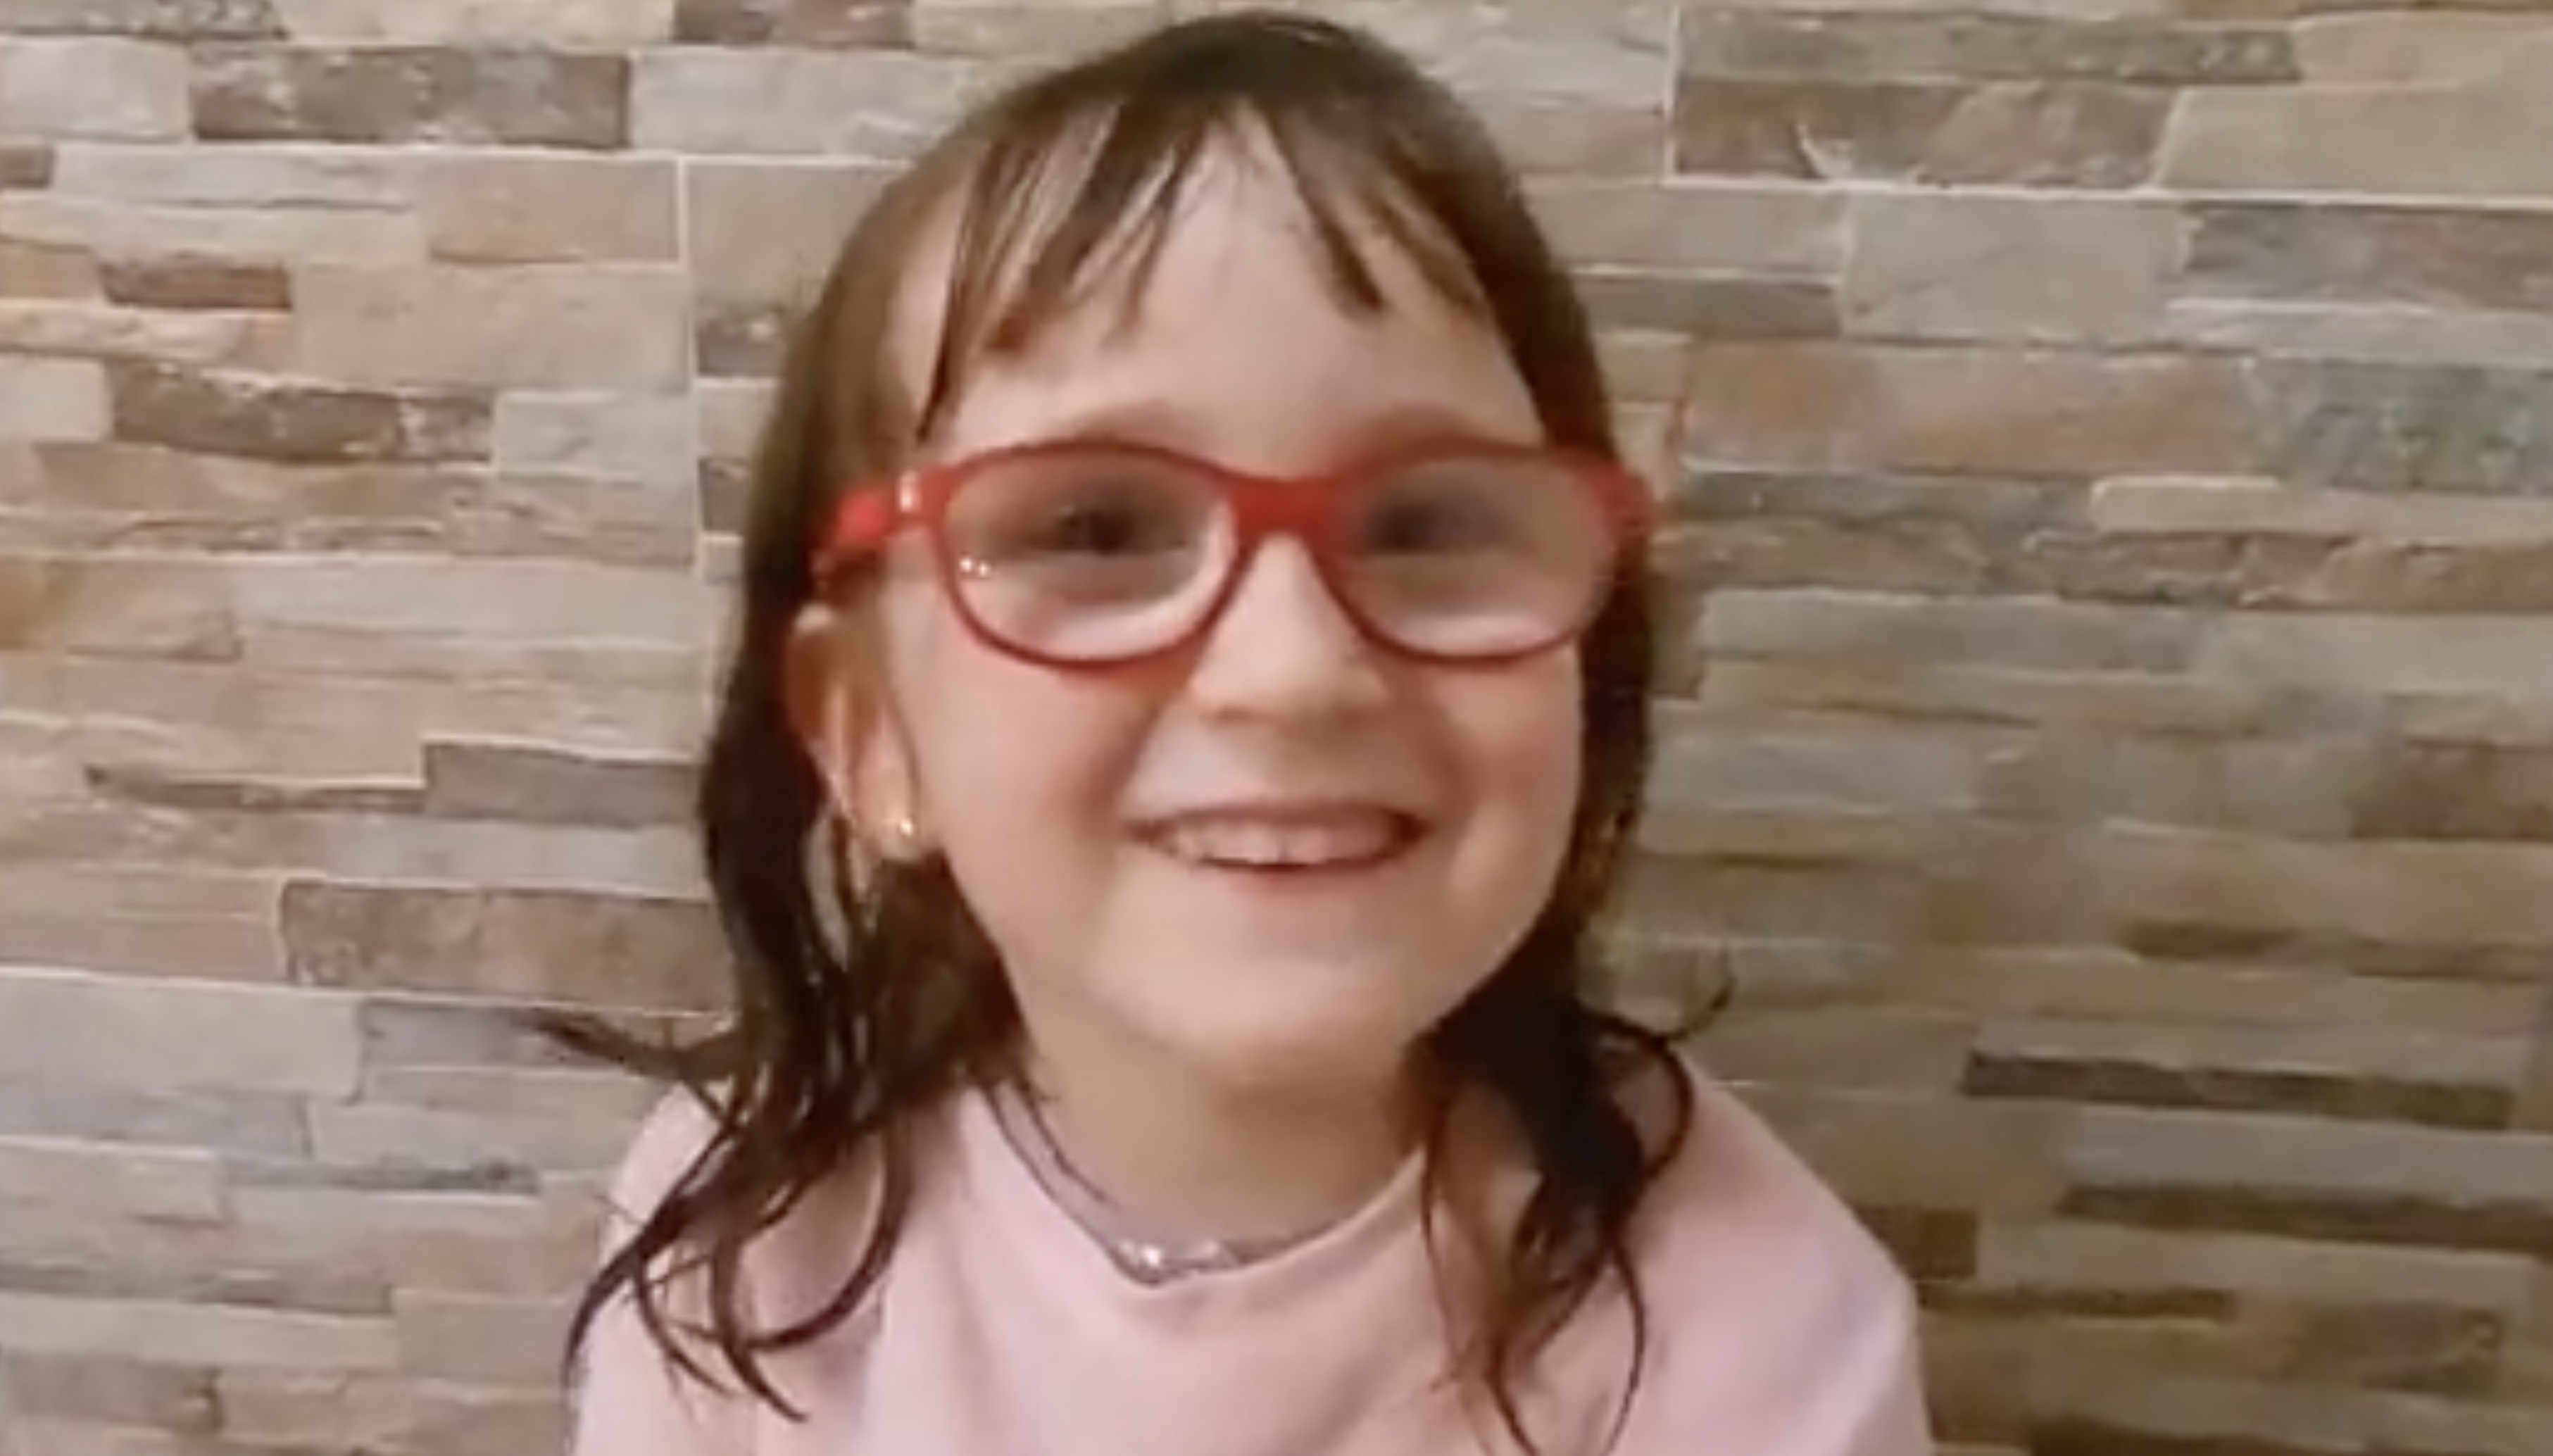 "Tengo 4 años y me despido del mundo de forma trágica e injusta": la despedida de Vera en un vídeo publicado por su padre.